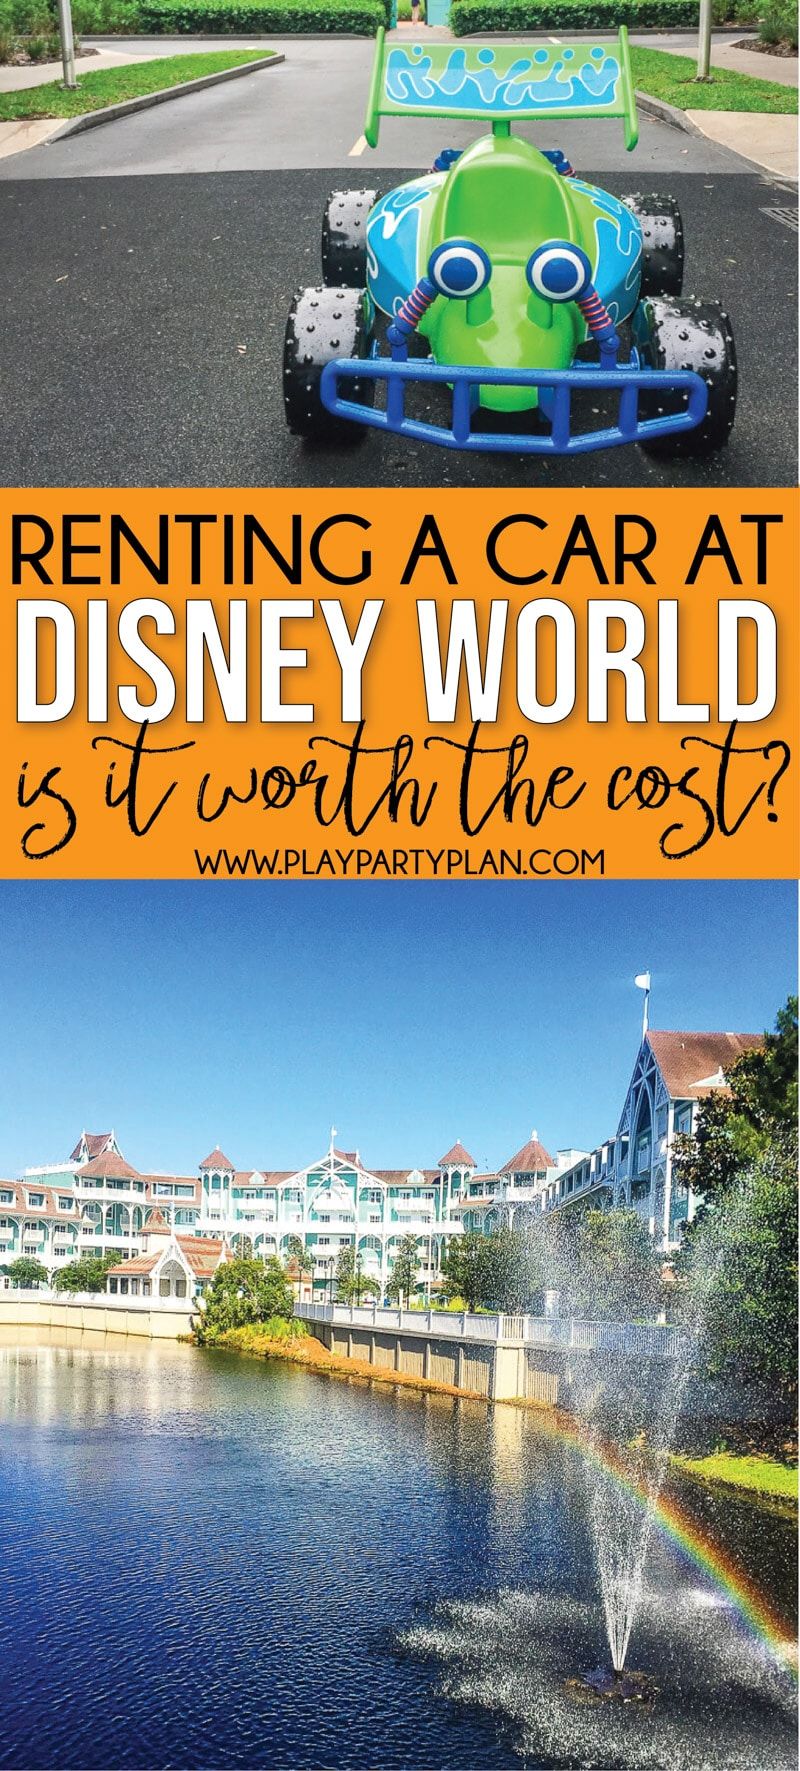 Heu de llogar un cotxe a Disney World? 12 raons per les quals ho hauríeu de fer absolutament.